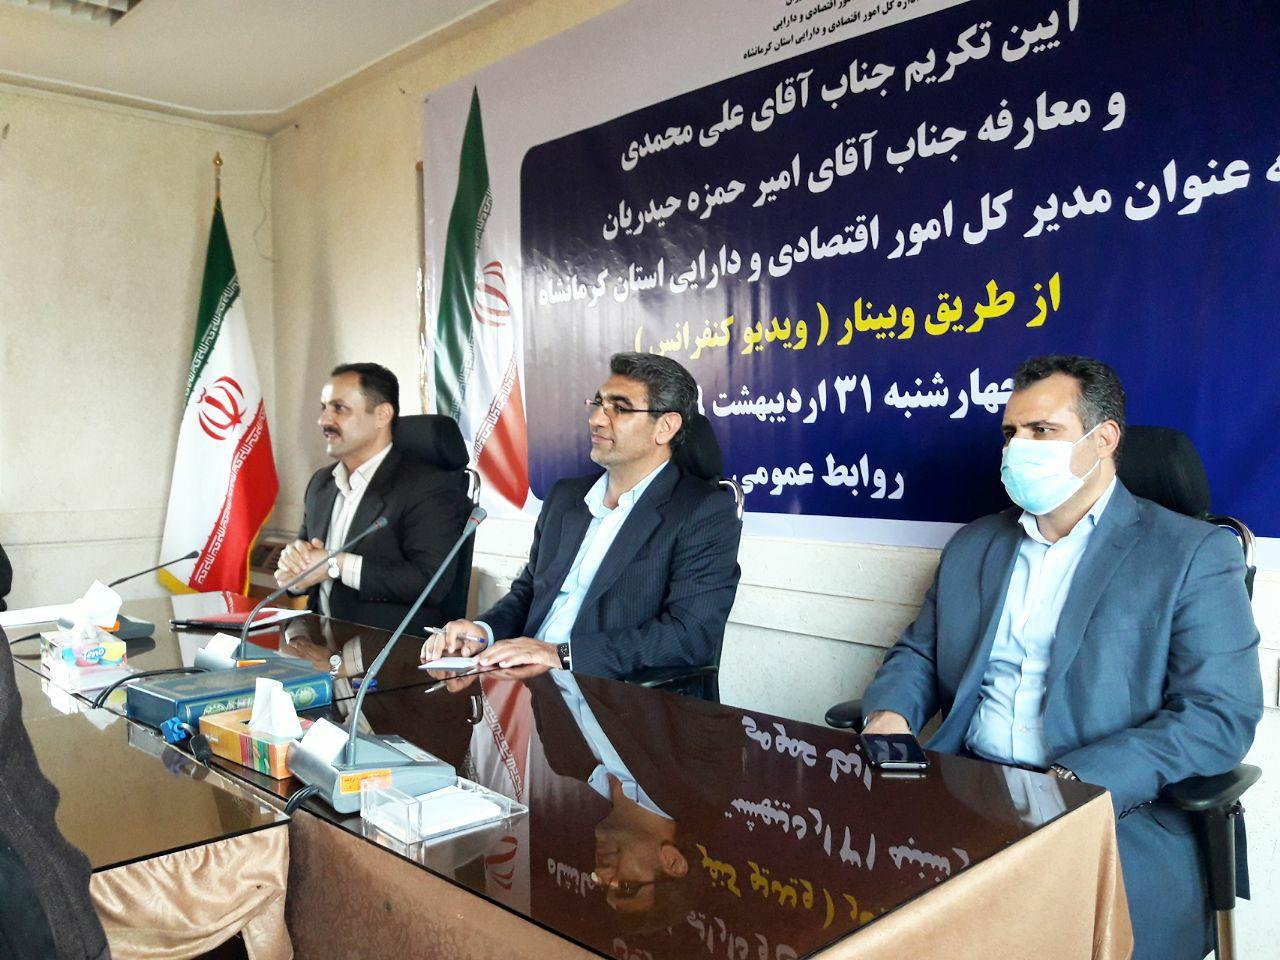 تداوم اصلاحات اقتصادی در استان کرمانشاه تا رسیدن به نقطه مطلوب